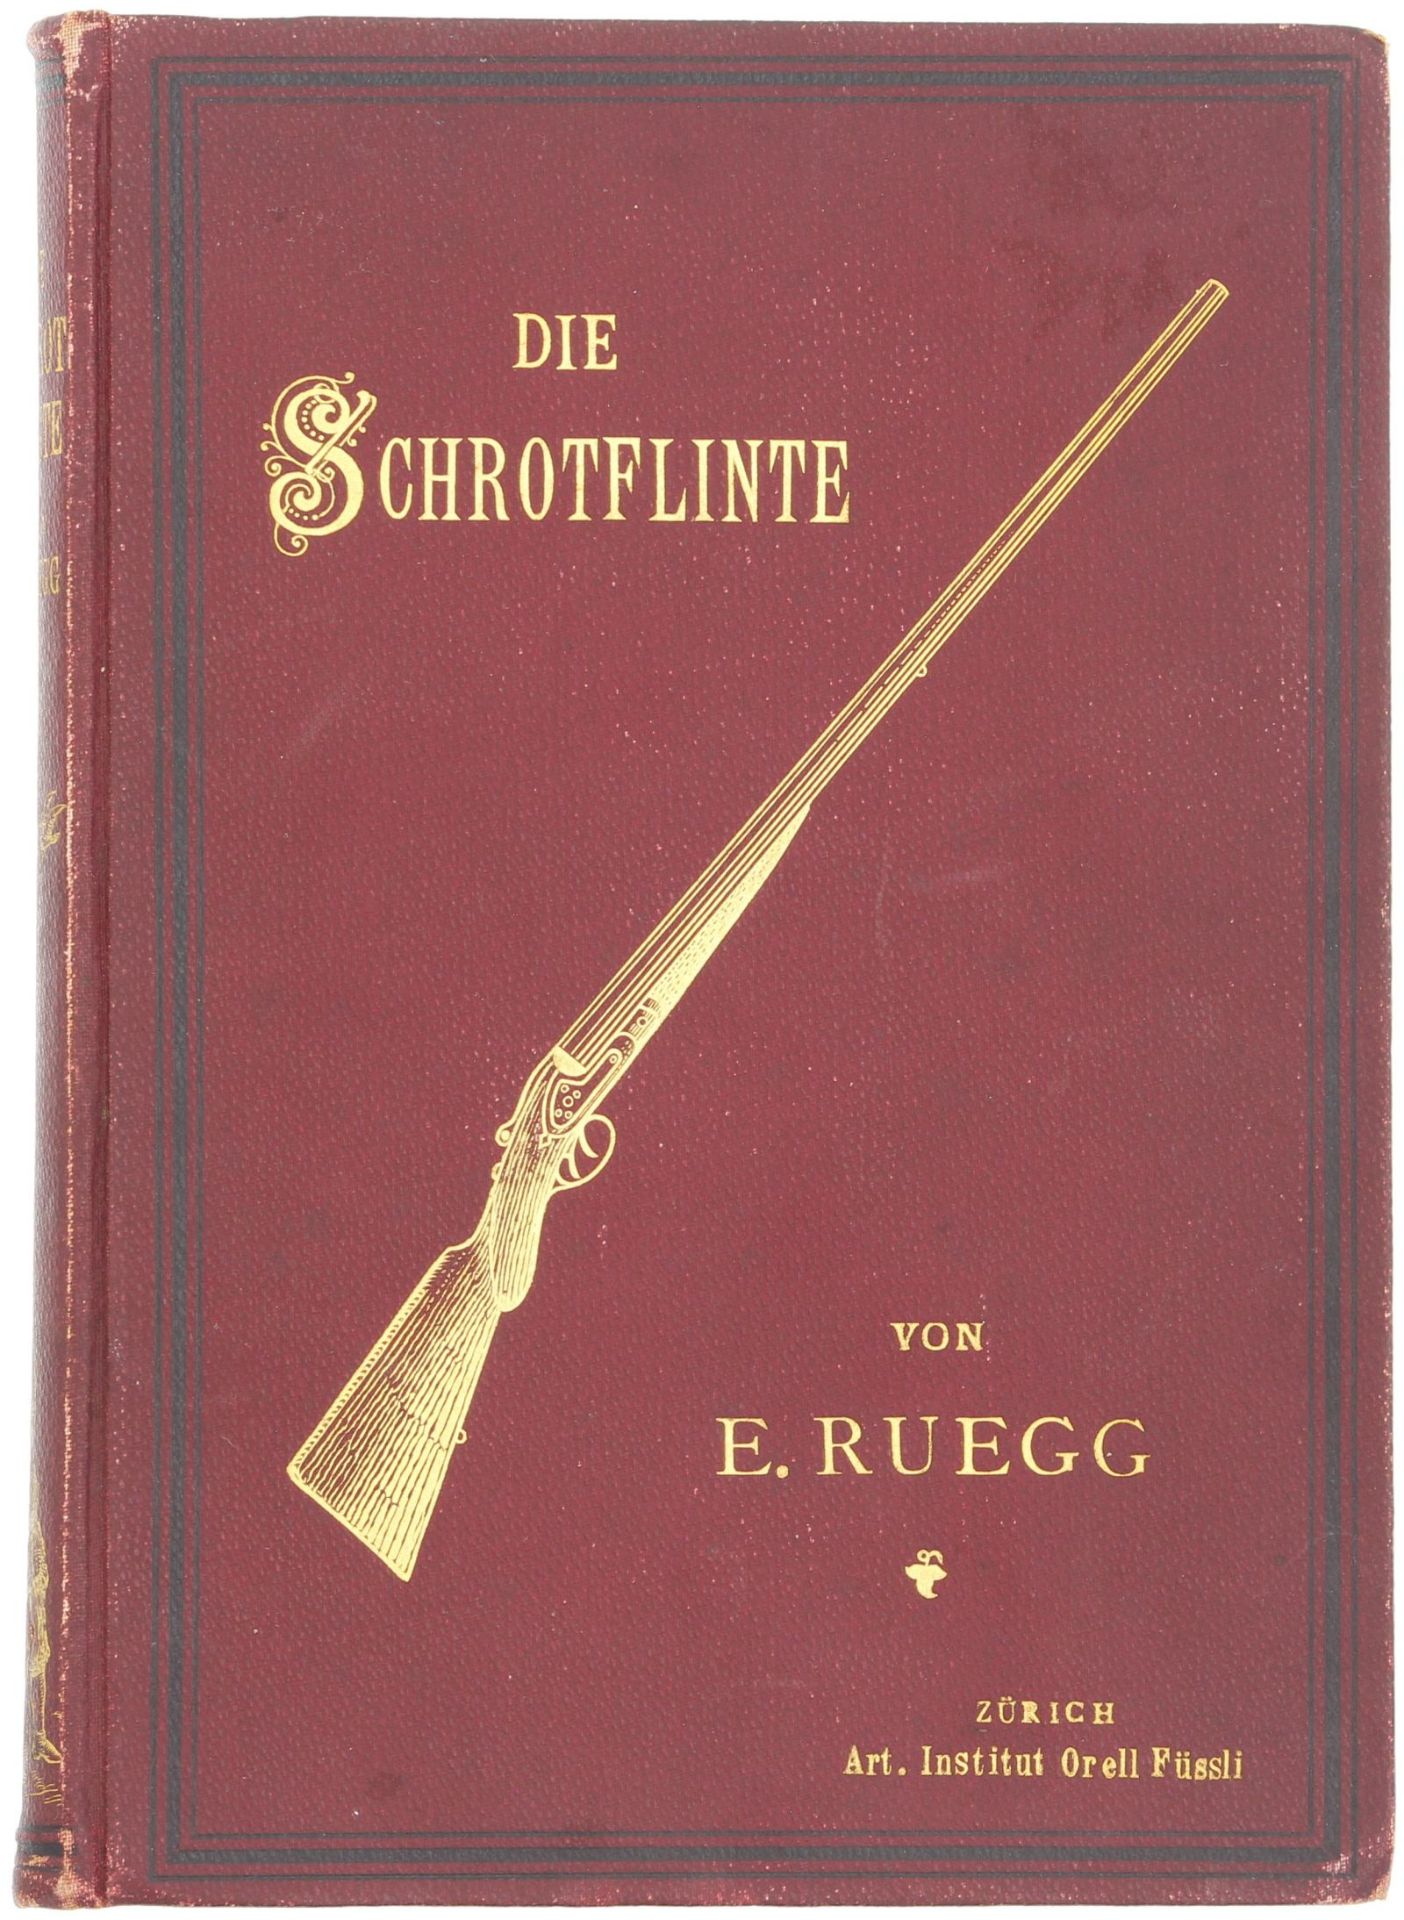 Buch "Die Schrotflinte" von E.Rüegg, Zürich 1896. Informatives Werk über die Entwicklung und